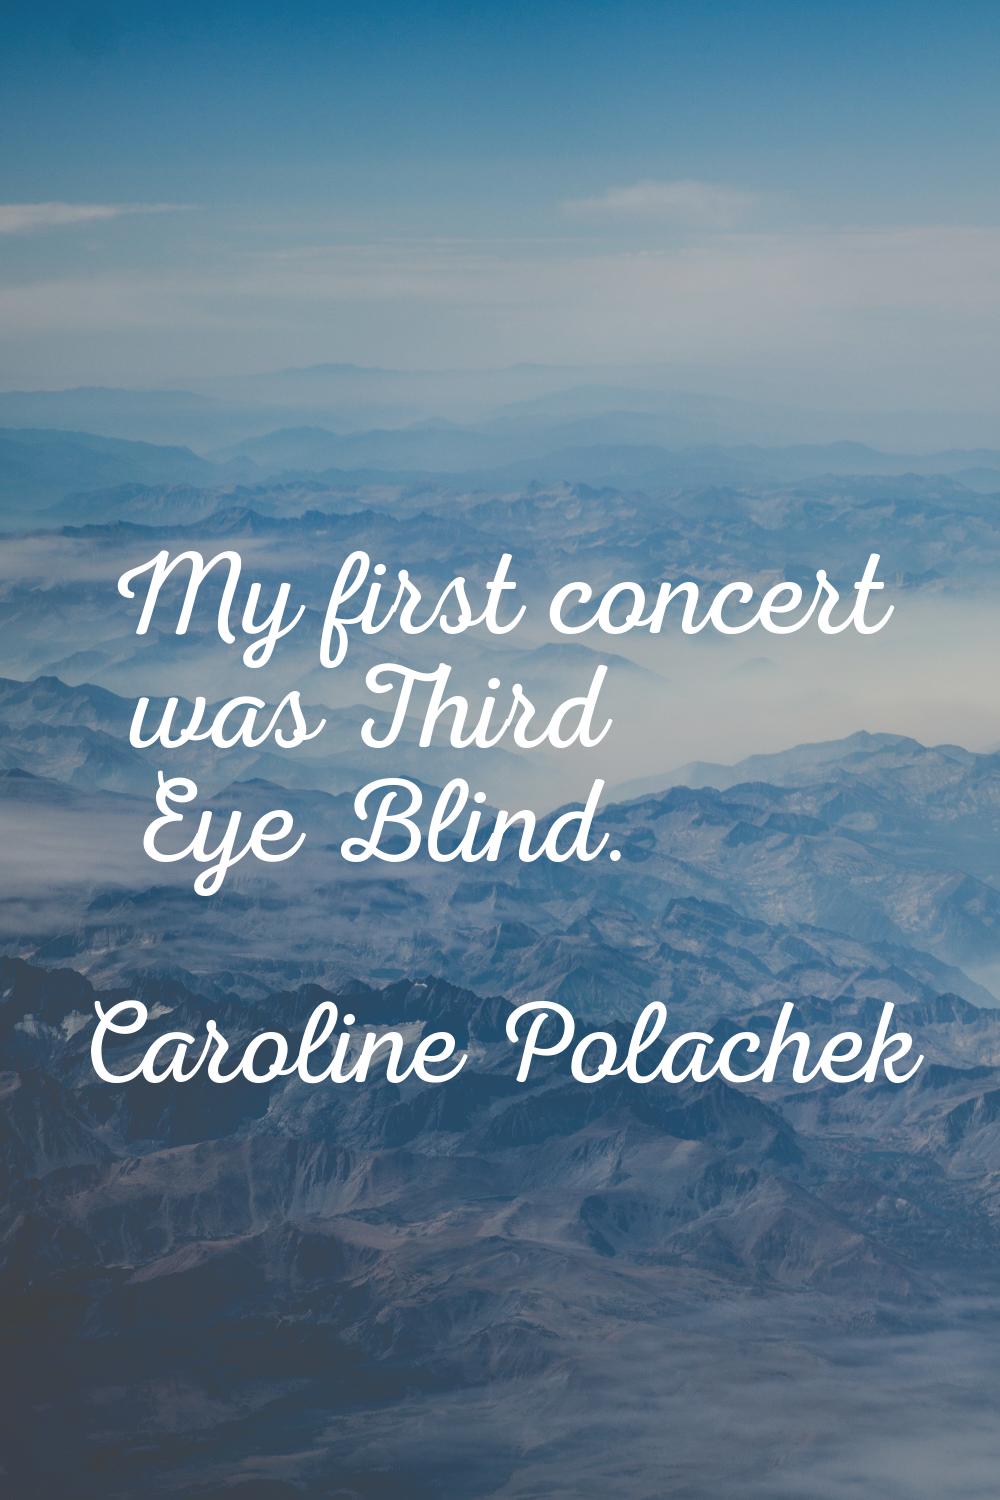 My first concert was Third Eye Blind.